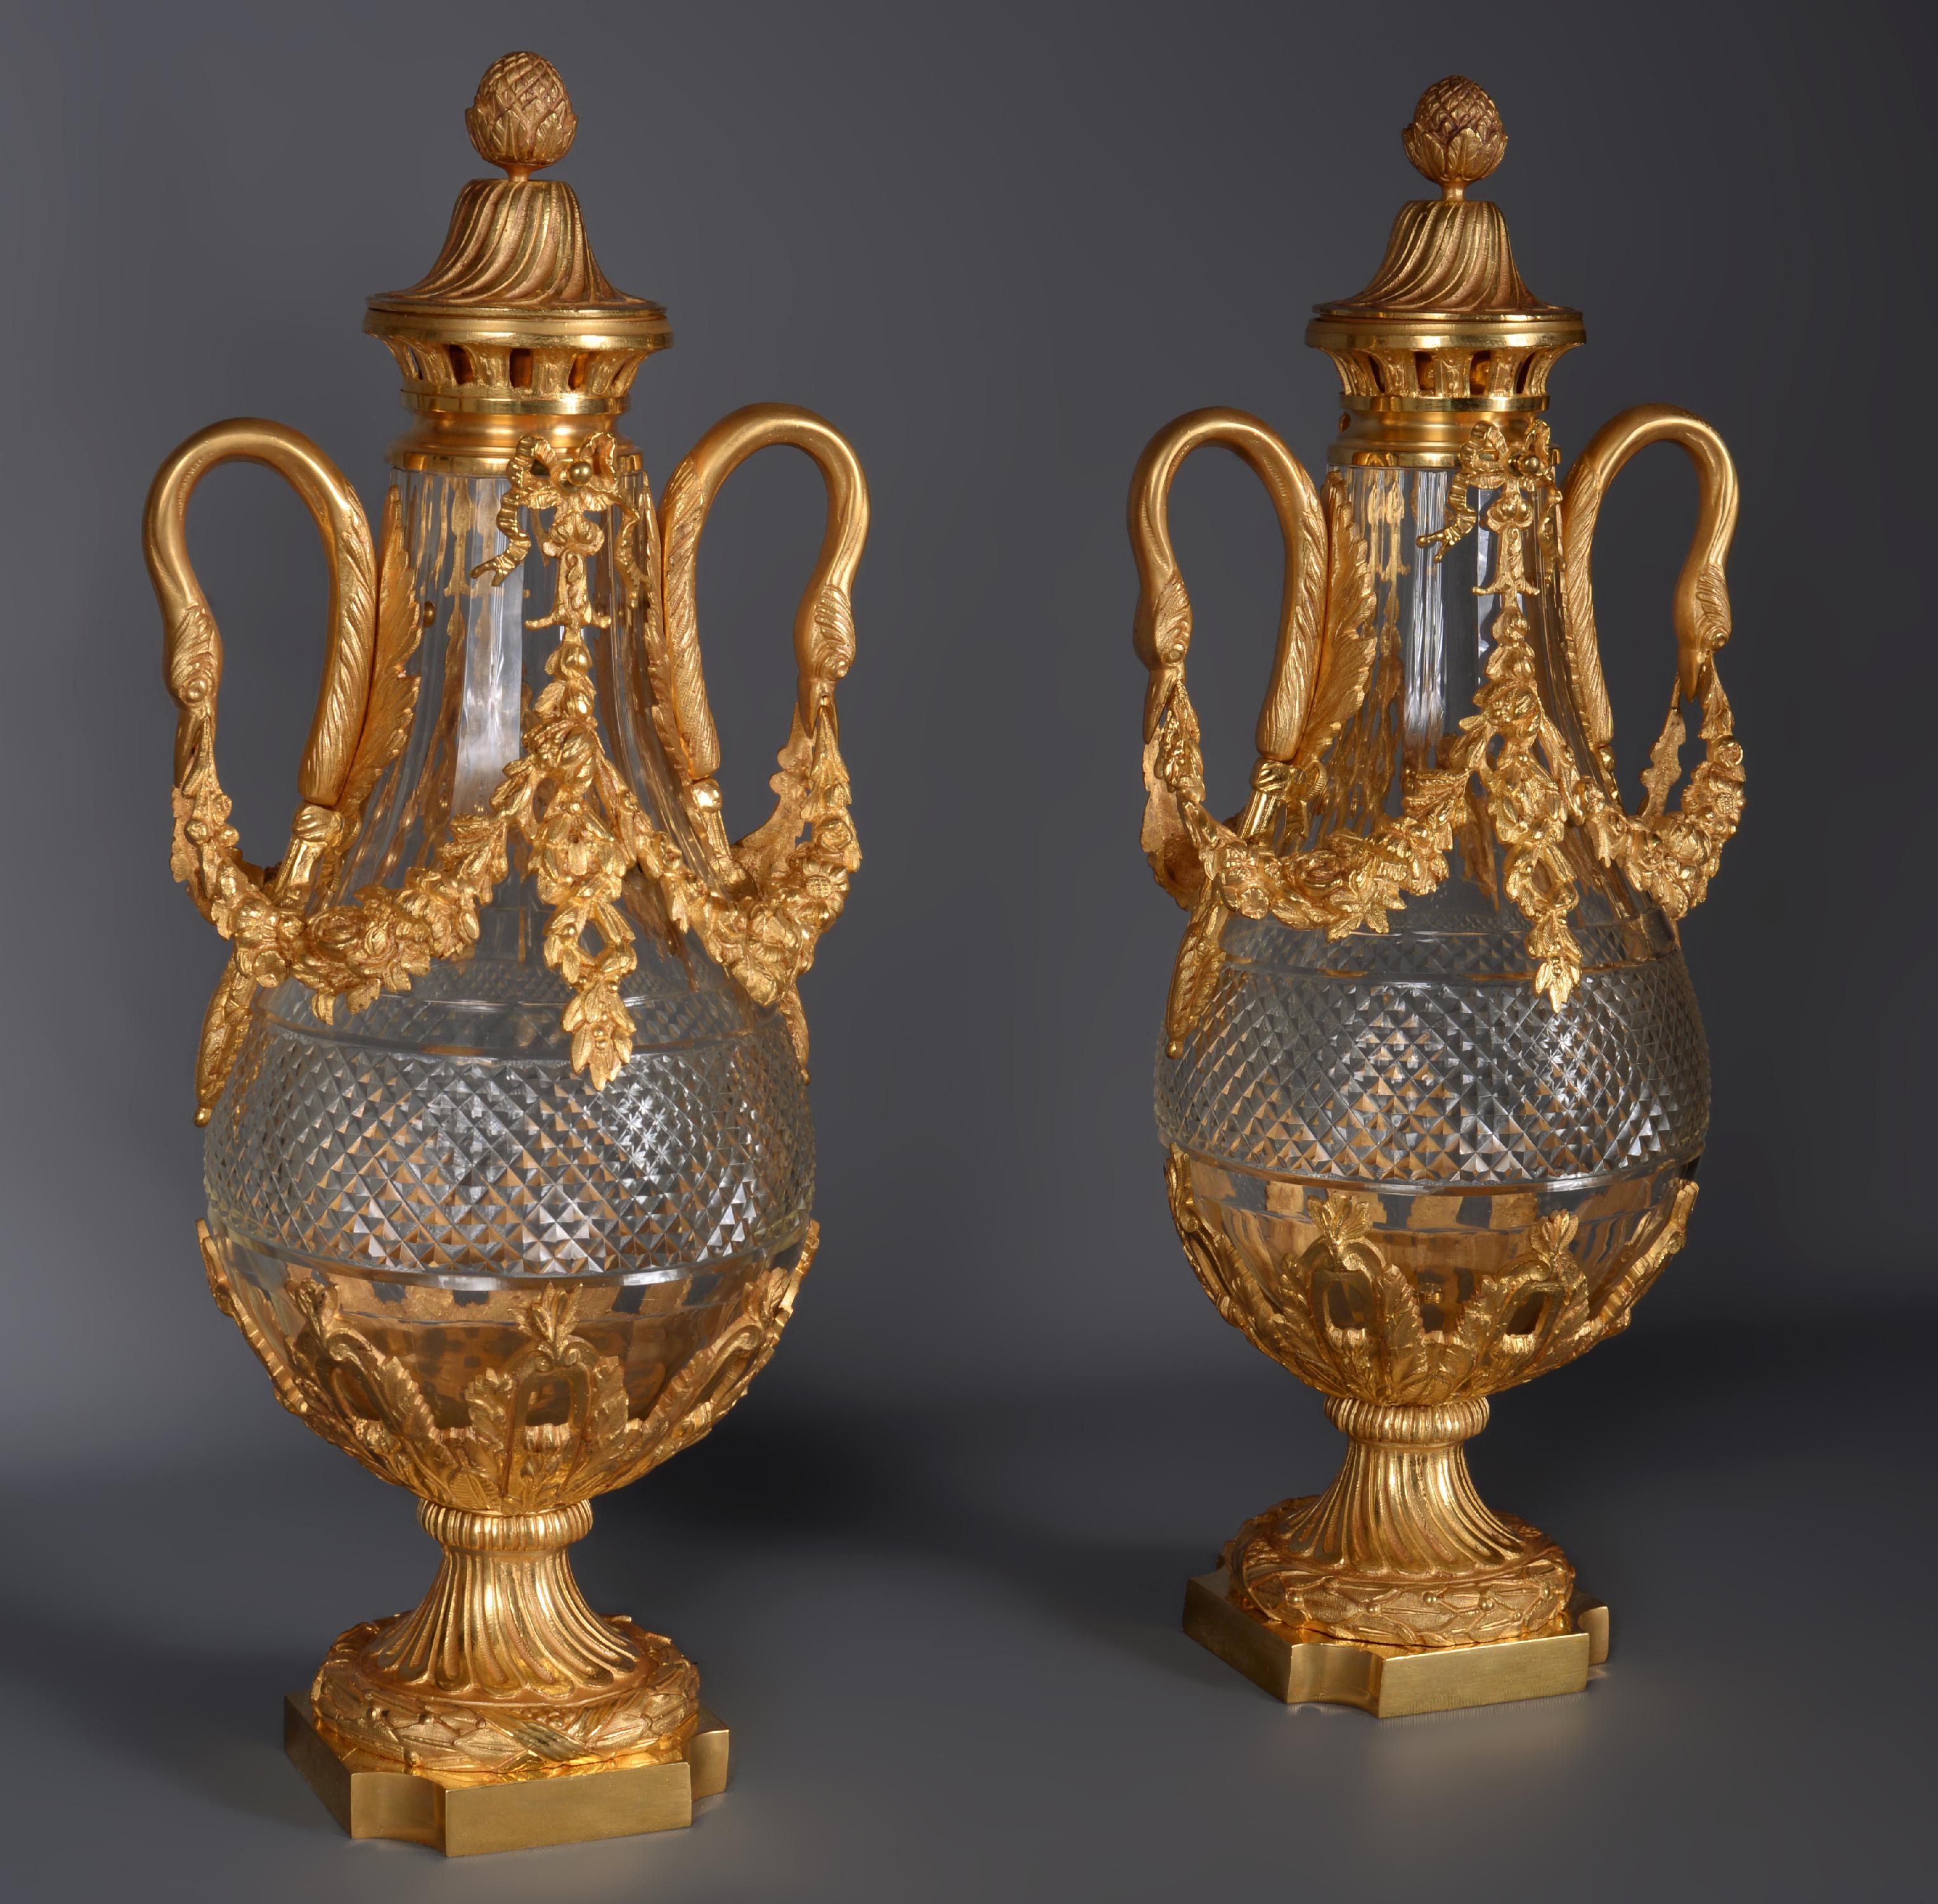 Cette élégante paire de vases en cristal taillé est ornée d'une délicate monture en bronze doré. 
Les anses représentant des cygnes tiennent une guirlande de fleurs. Les deux ont leur couvercle d'origine.